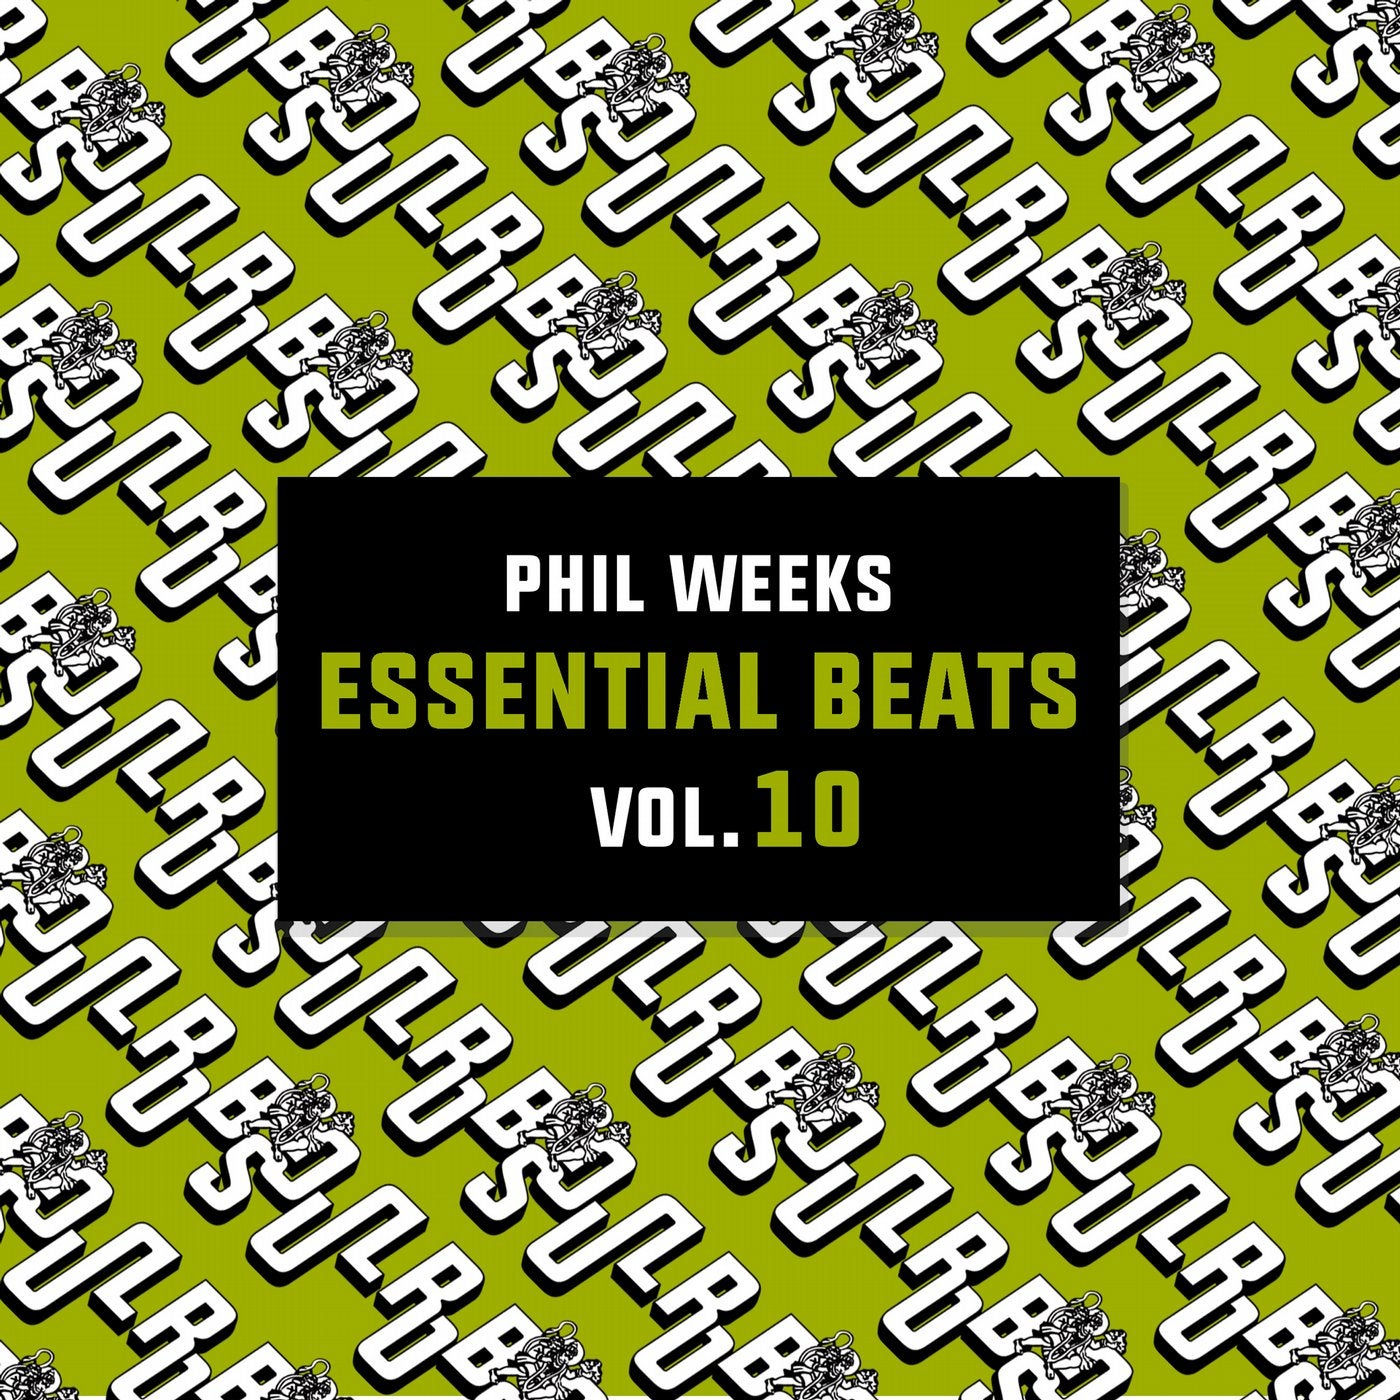 Essential Beats Vol.10